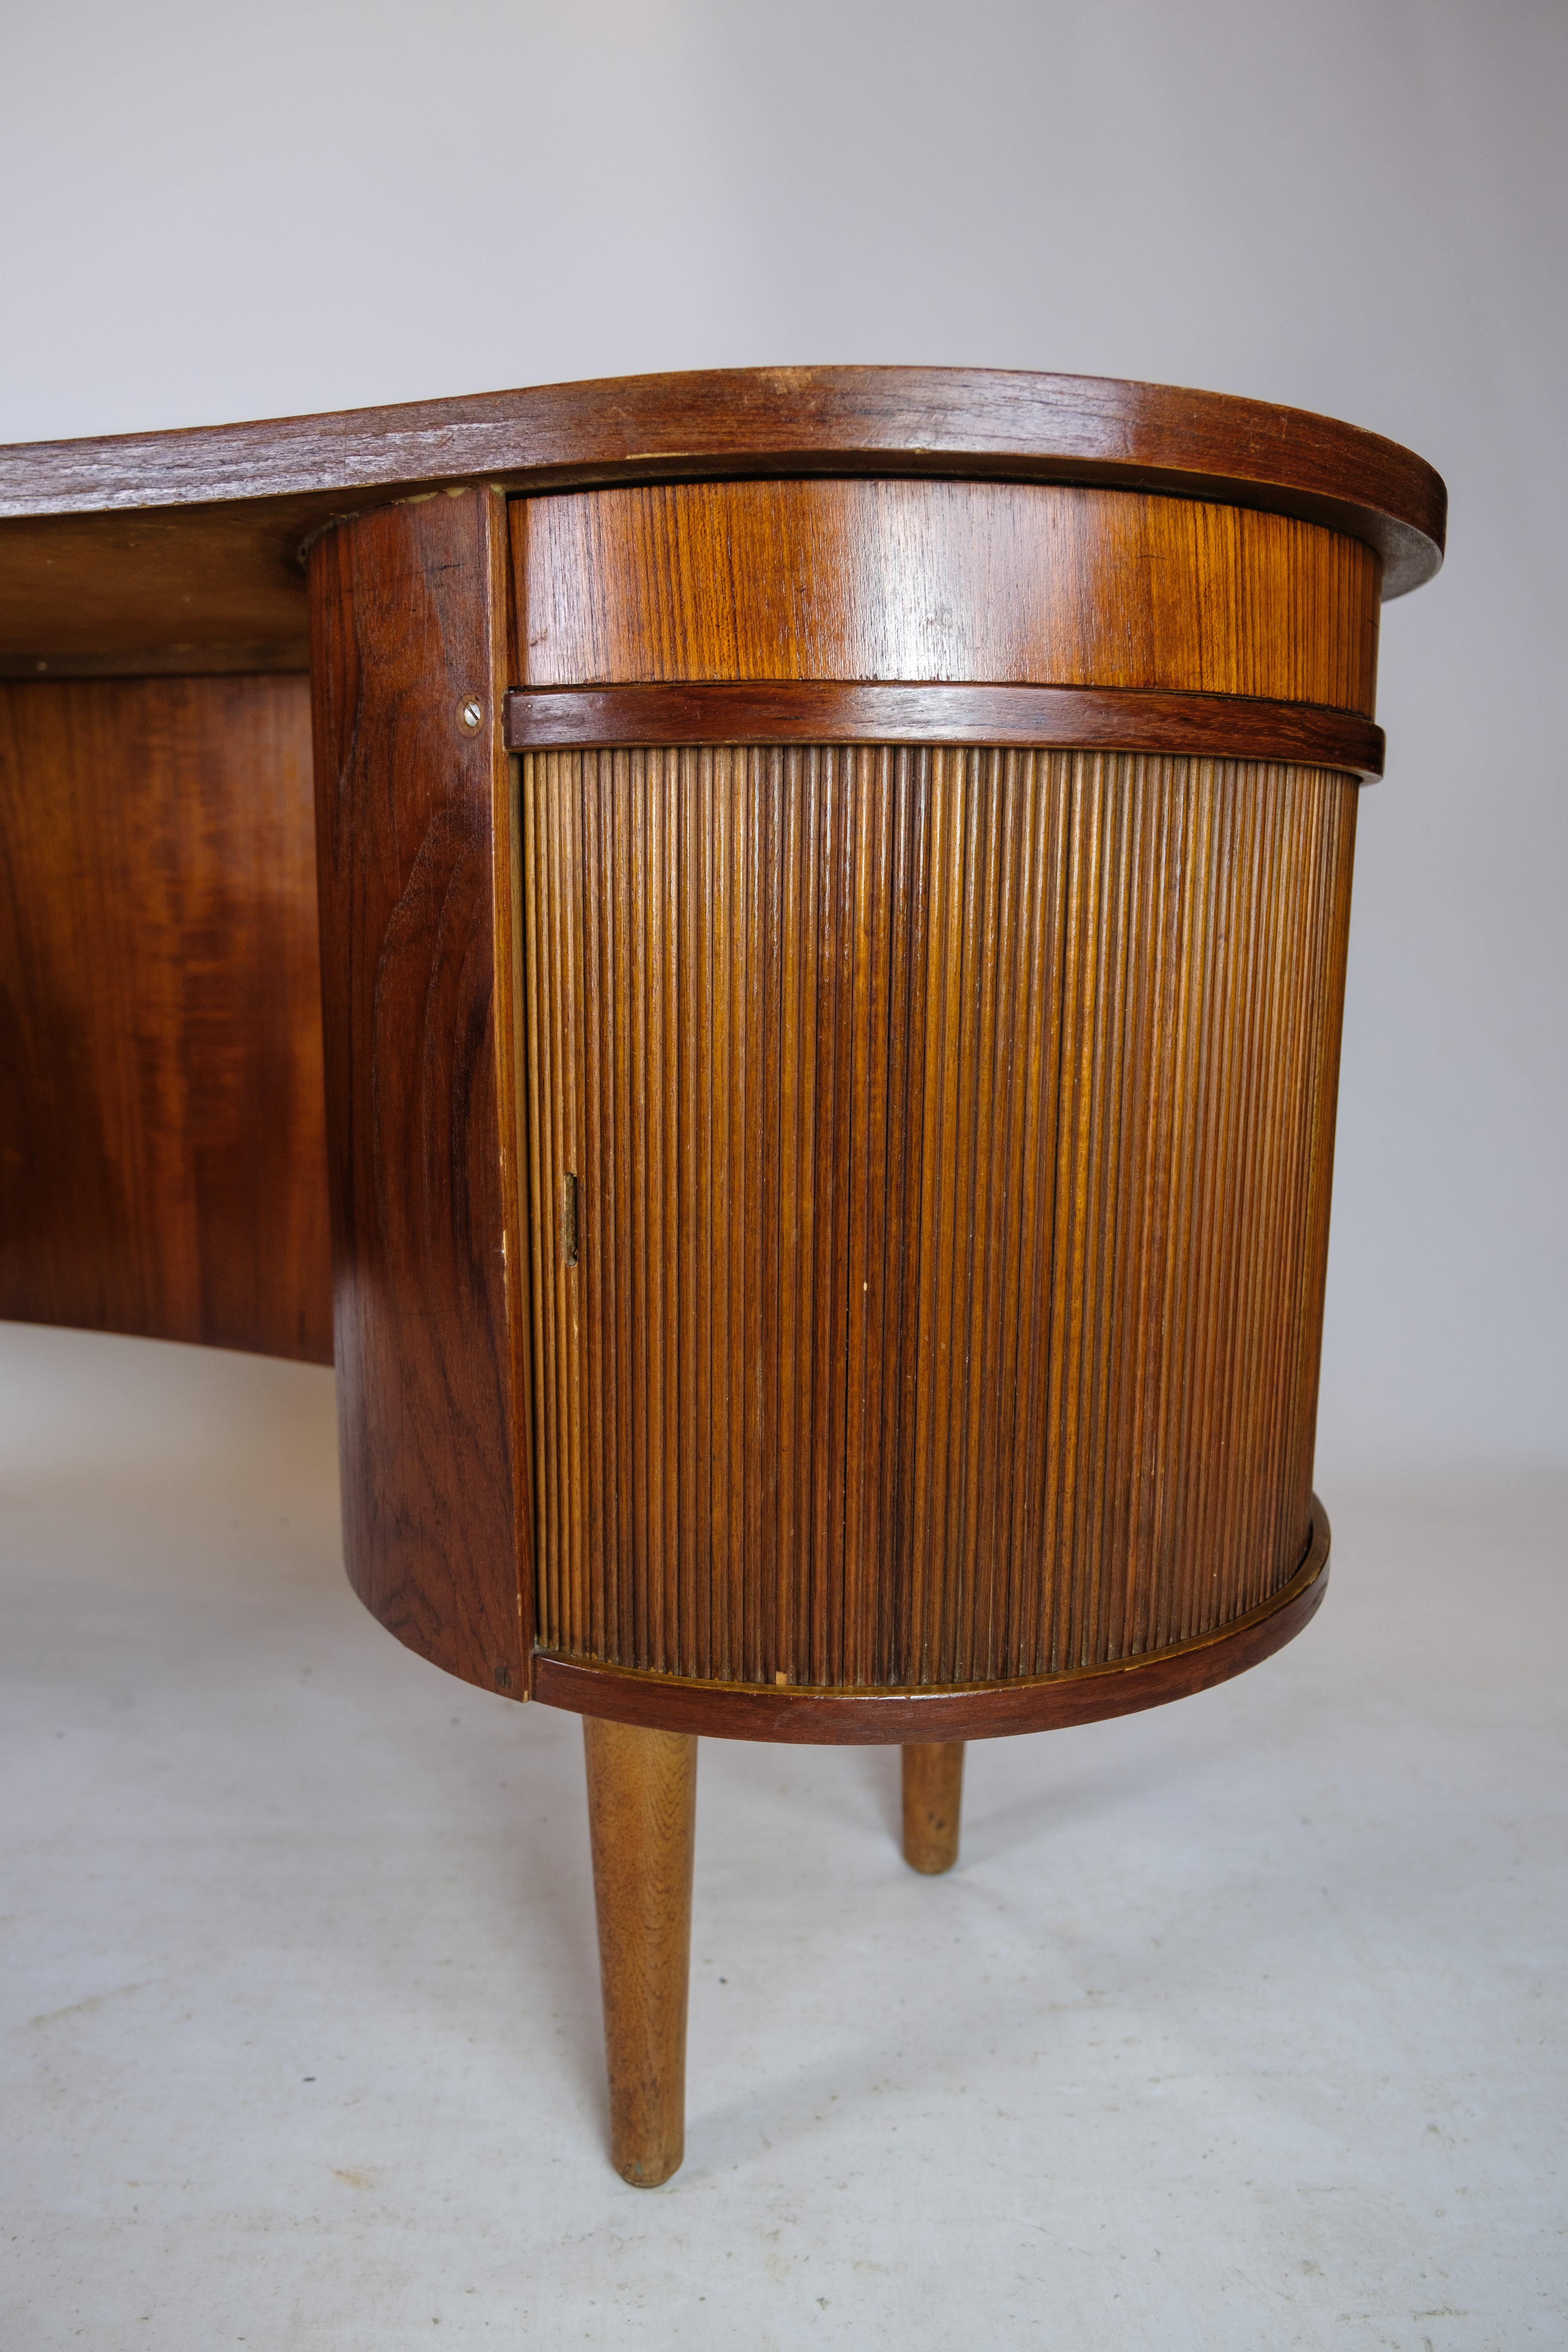 Scandinavian Modern Desk in Teak wood model 54 by Kai Kristiansen and Feldballes furniture from 1954 For Sale